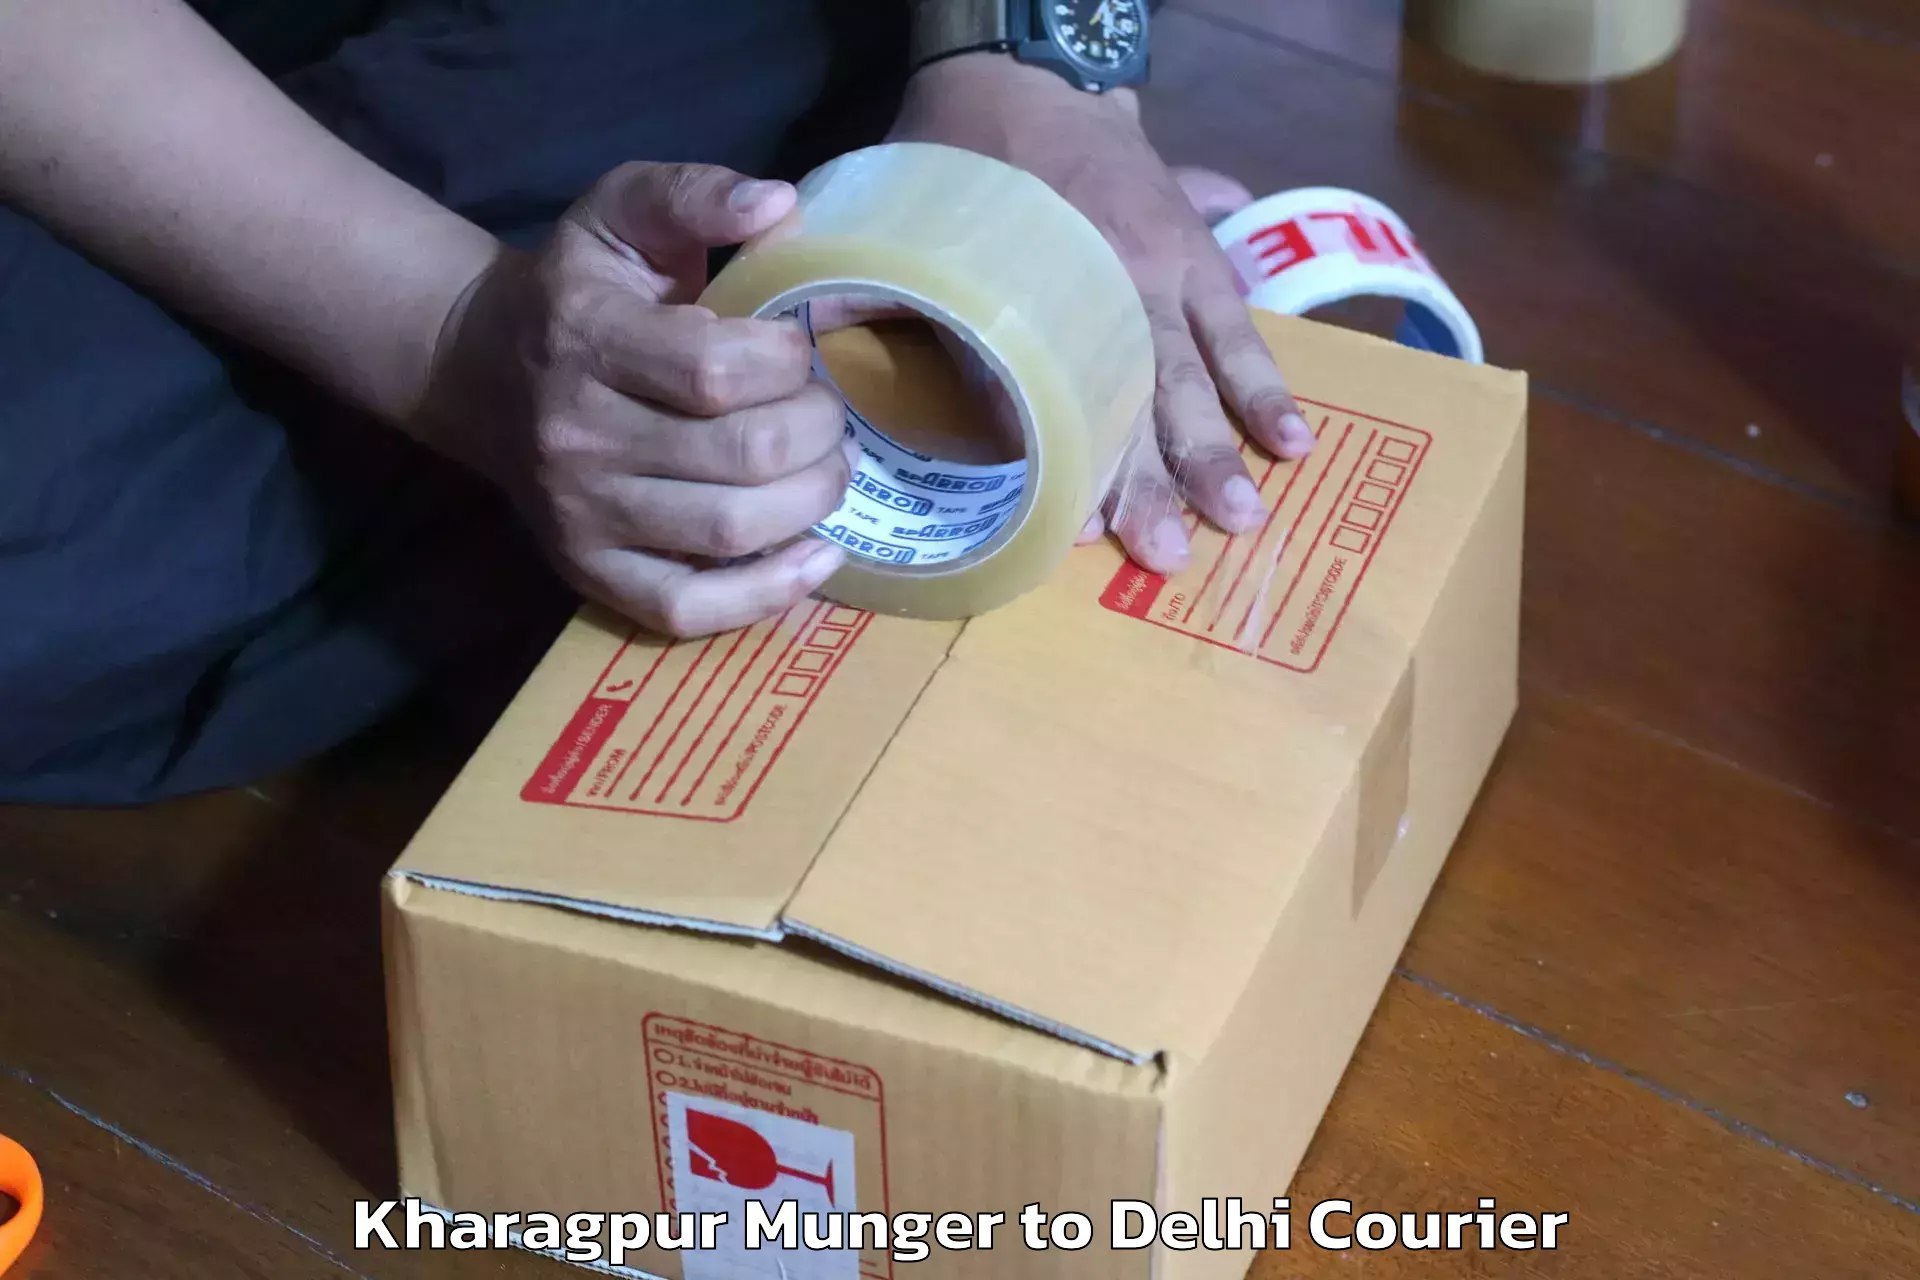 Professional furniture movers Kharagpur Munger to Kalkaji